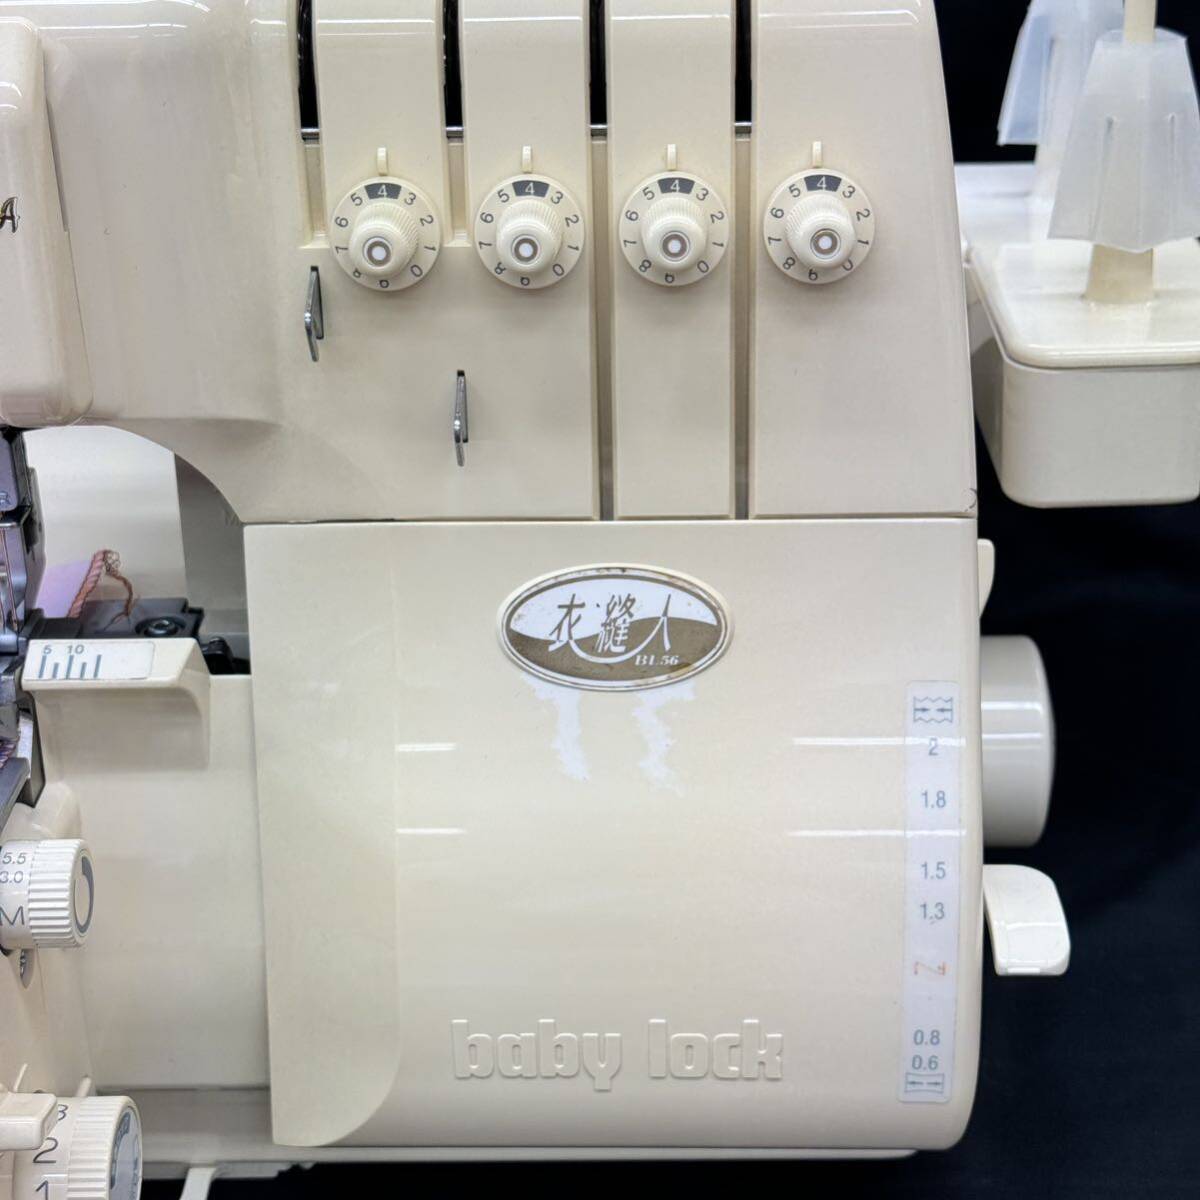 USED 中古 状態良 整備調整済 日本製 ベビーロック 衣縫人 BL56 2本針4本糸ロック フットコント付き エアスルーシステムの画像8